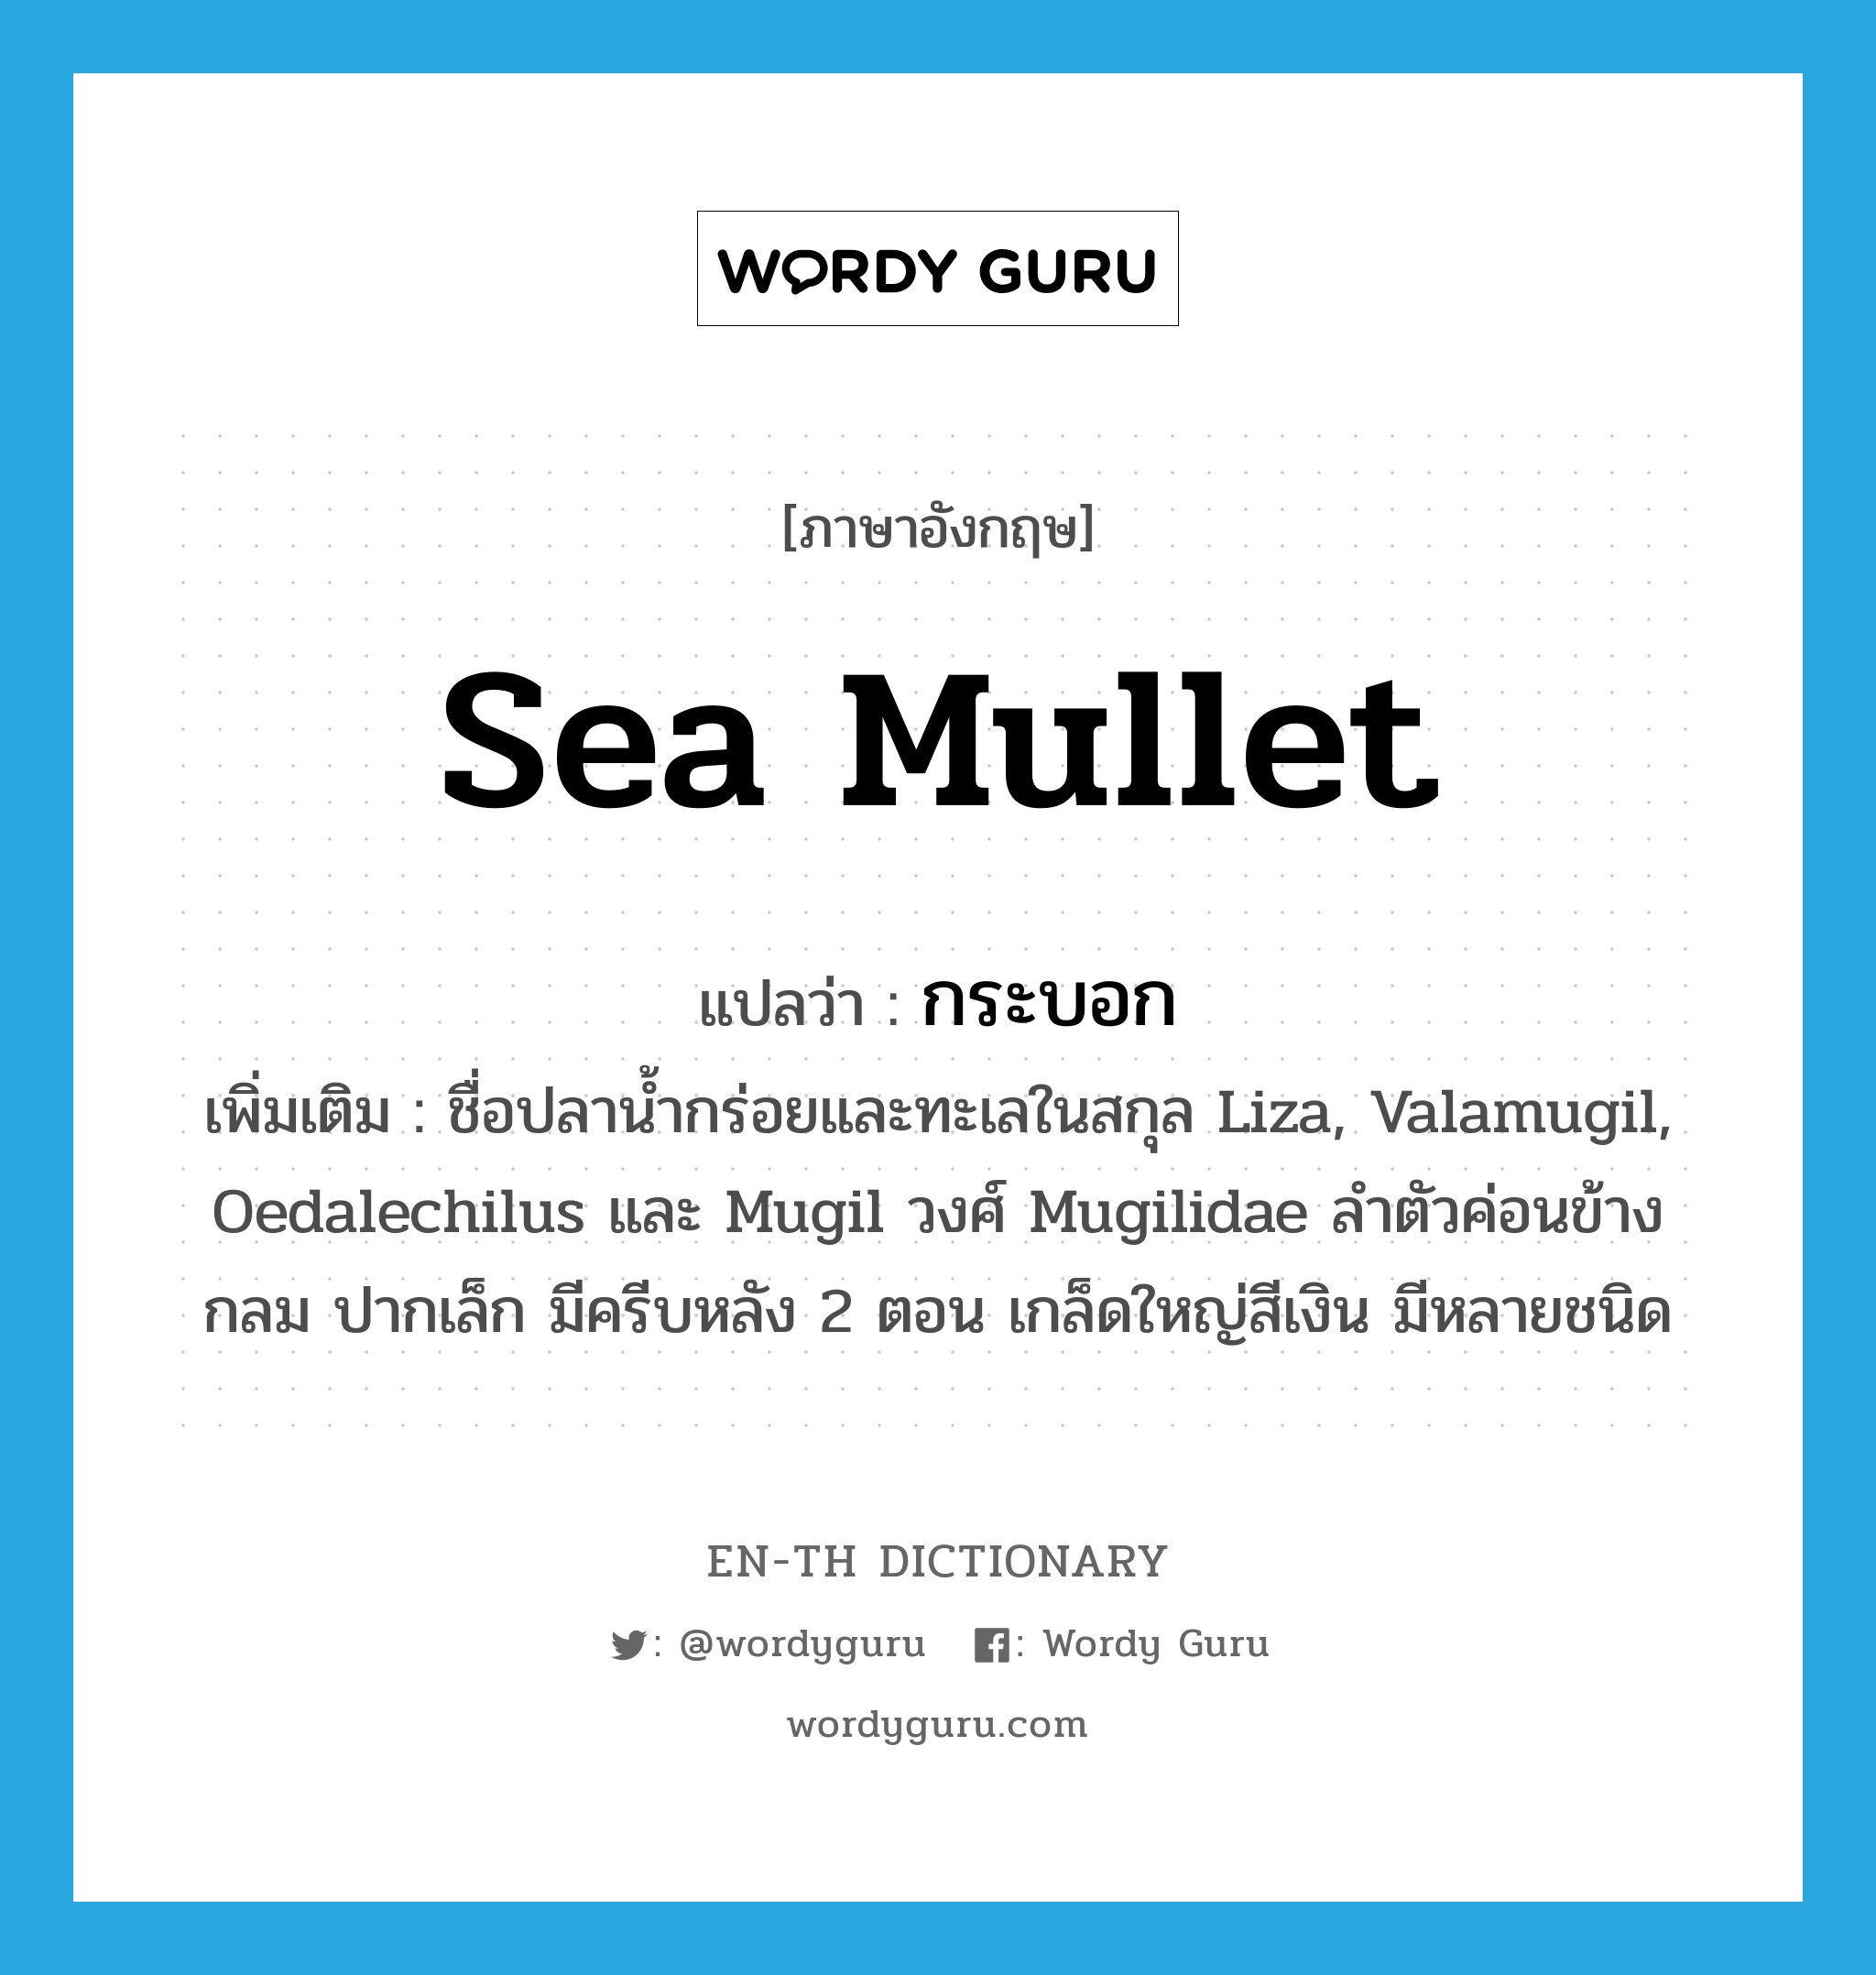 กระบอก ภาษาอังกฤษ?, คำศัพท์ภาษาอังกฤษ กระบอก แปลว่า sea mullet ประเภท N เพิ่มเติม ชื่อปลาน้ำกร่อยและทะเลในสกุล Liza, Valamugil, Oedalechilus และ Mugil วงศ์ Mugilidae ลำตัวค่อนข้างกลม ปากเล็ก มีครีบหลัง 2 ตอน เกล็ดใหญ่สีเงิน มีหลายชนิด หมวด N